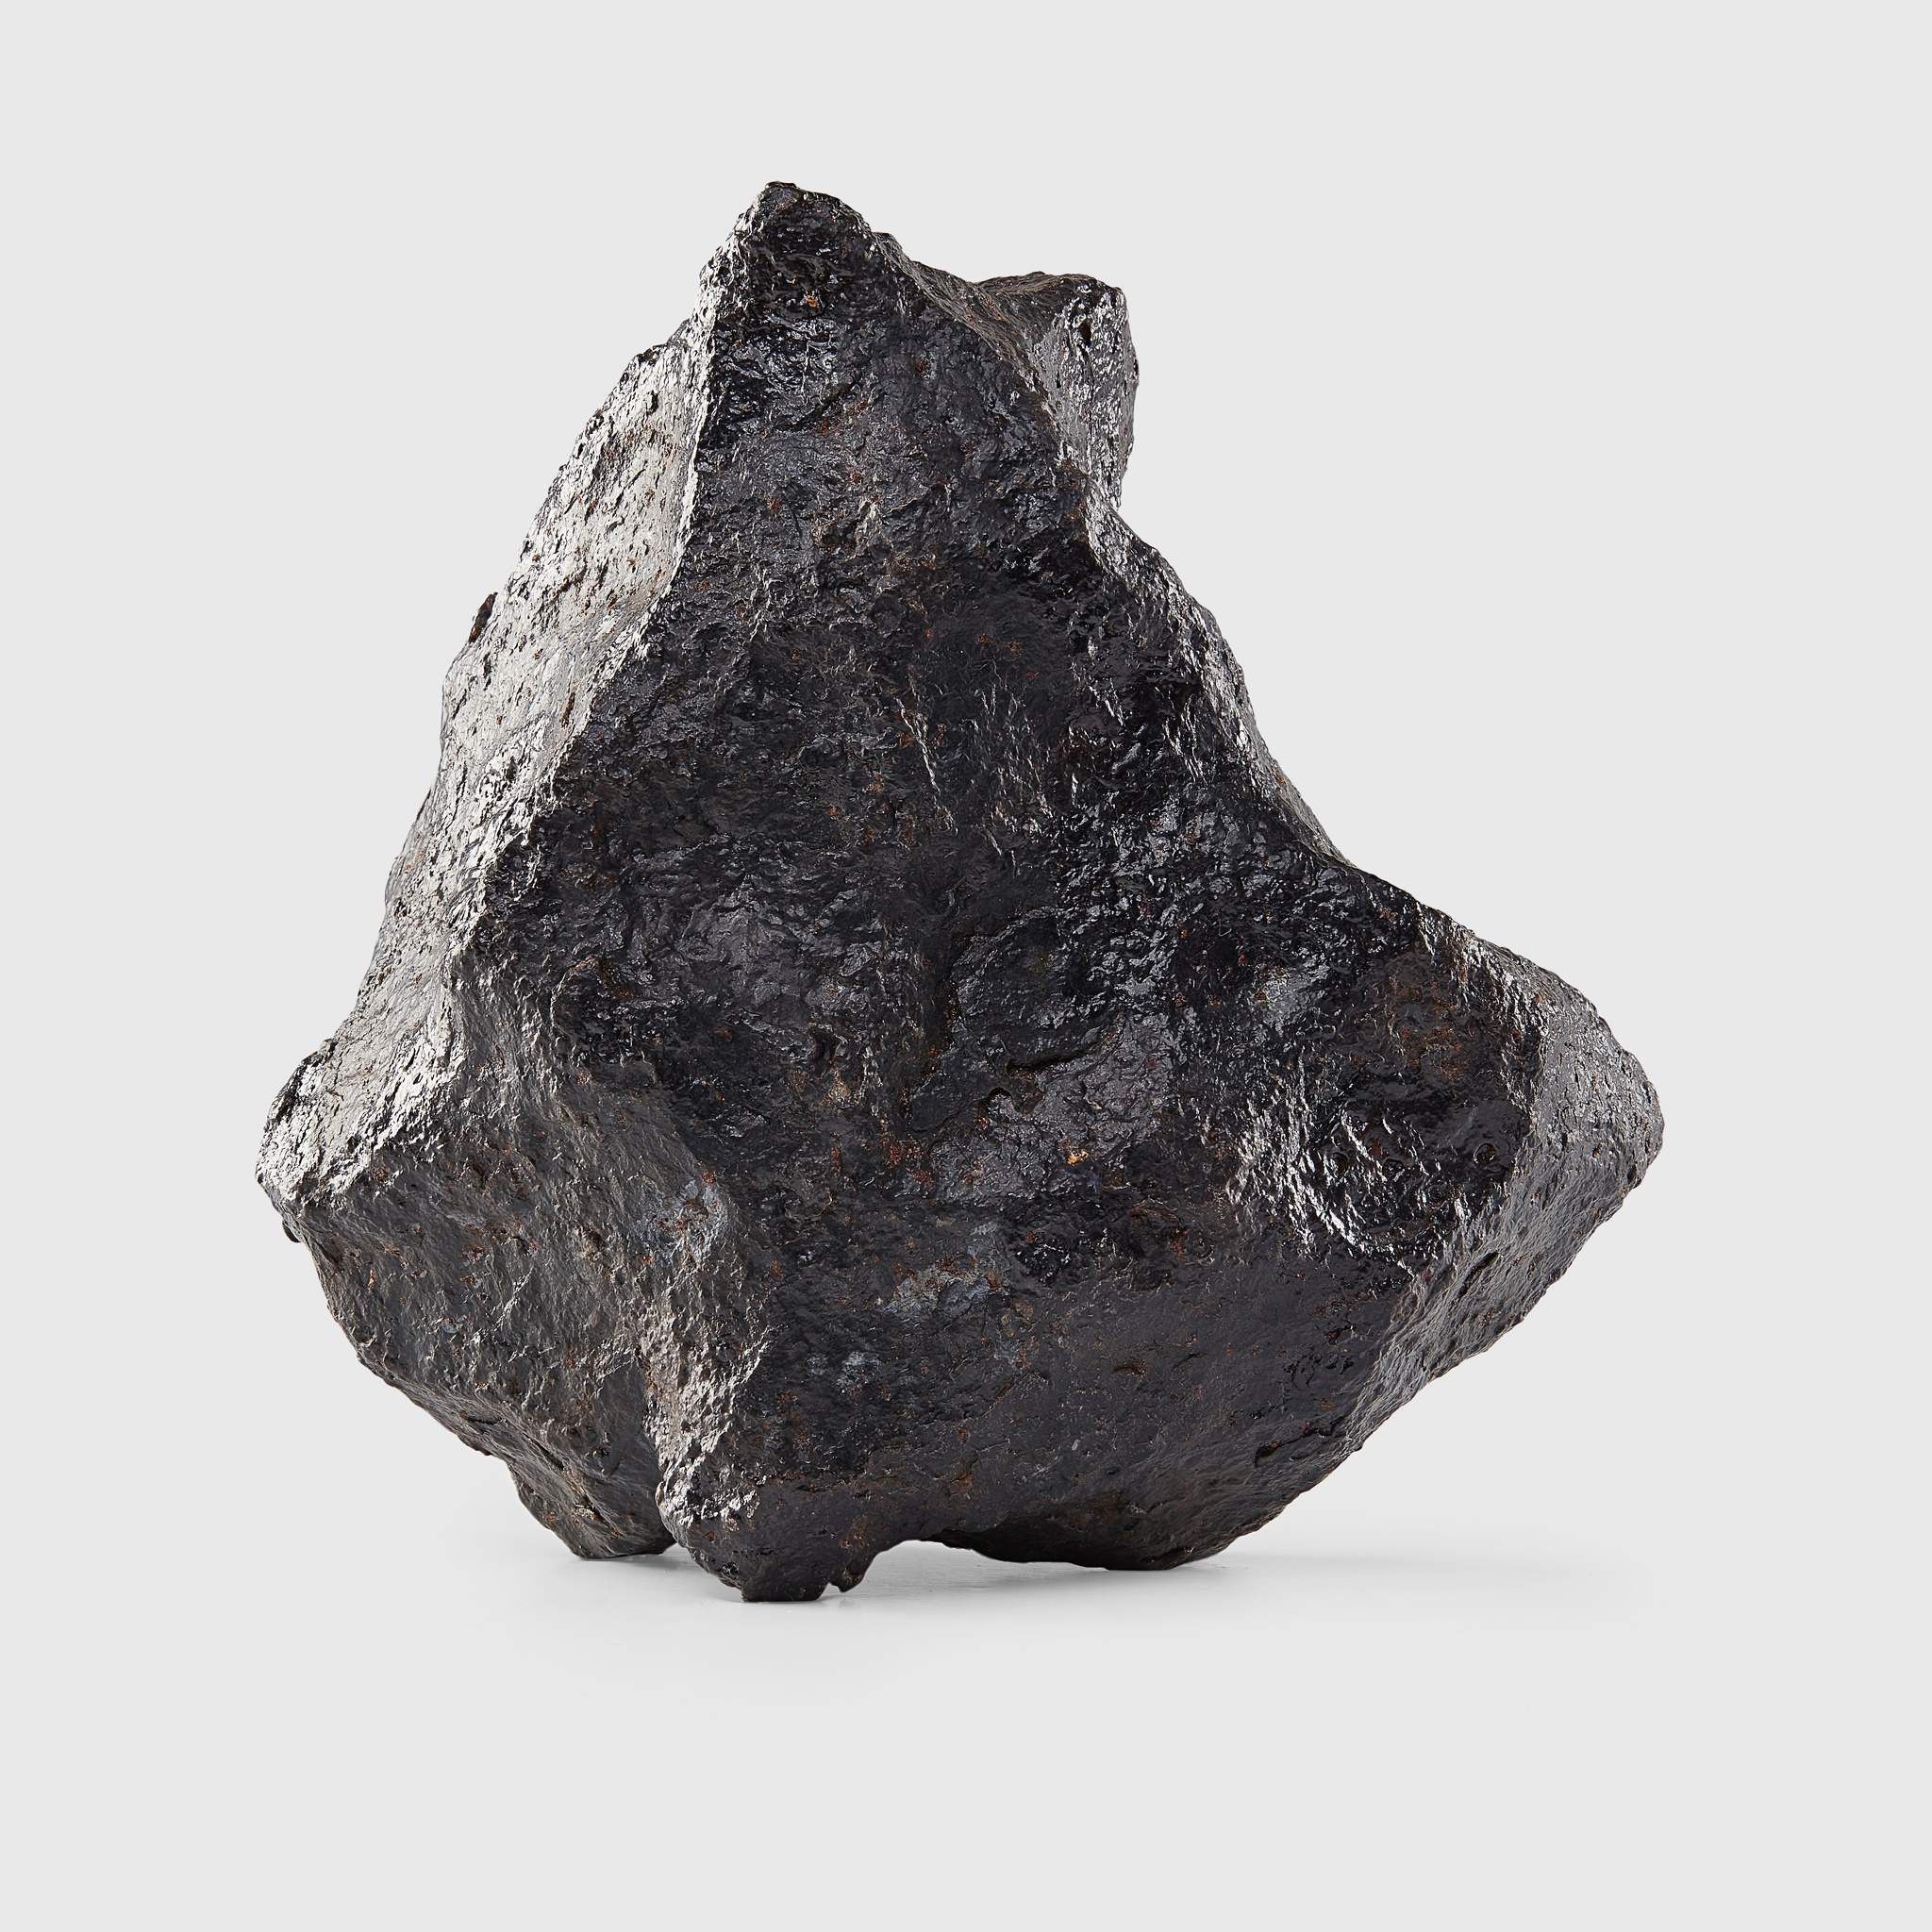 1 real Campo Del Cielo Meteorite per lot 2 to 3 gram size.